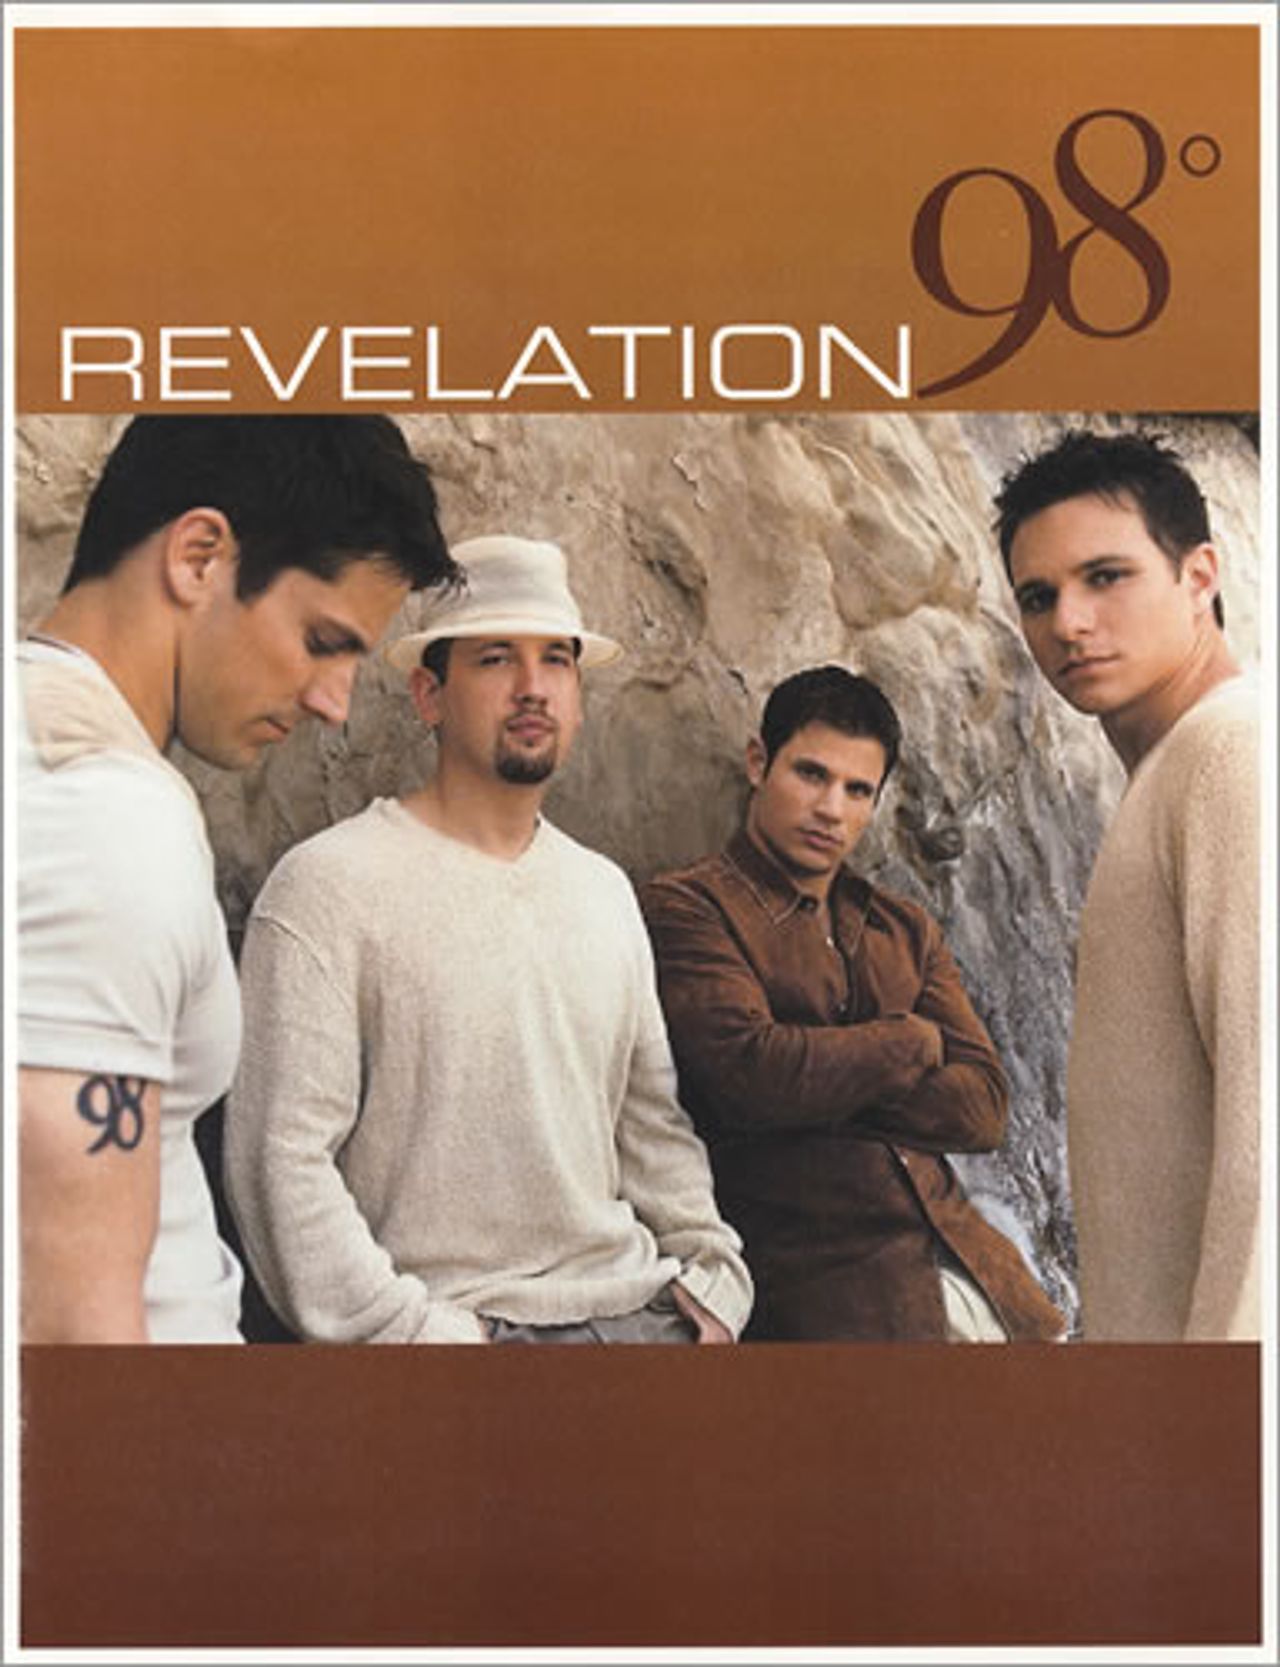 98 Degrees Revelation - press pack US Promo Press pack